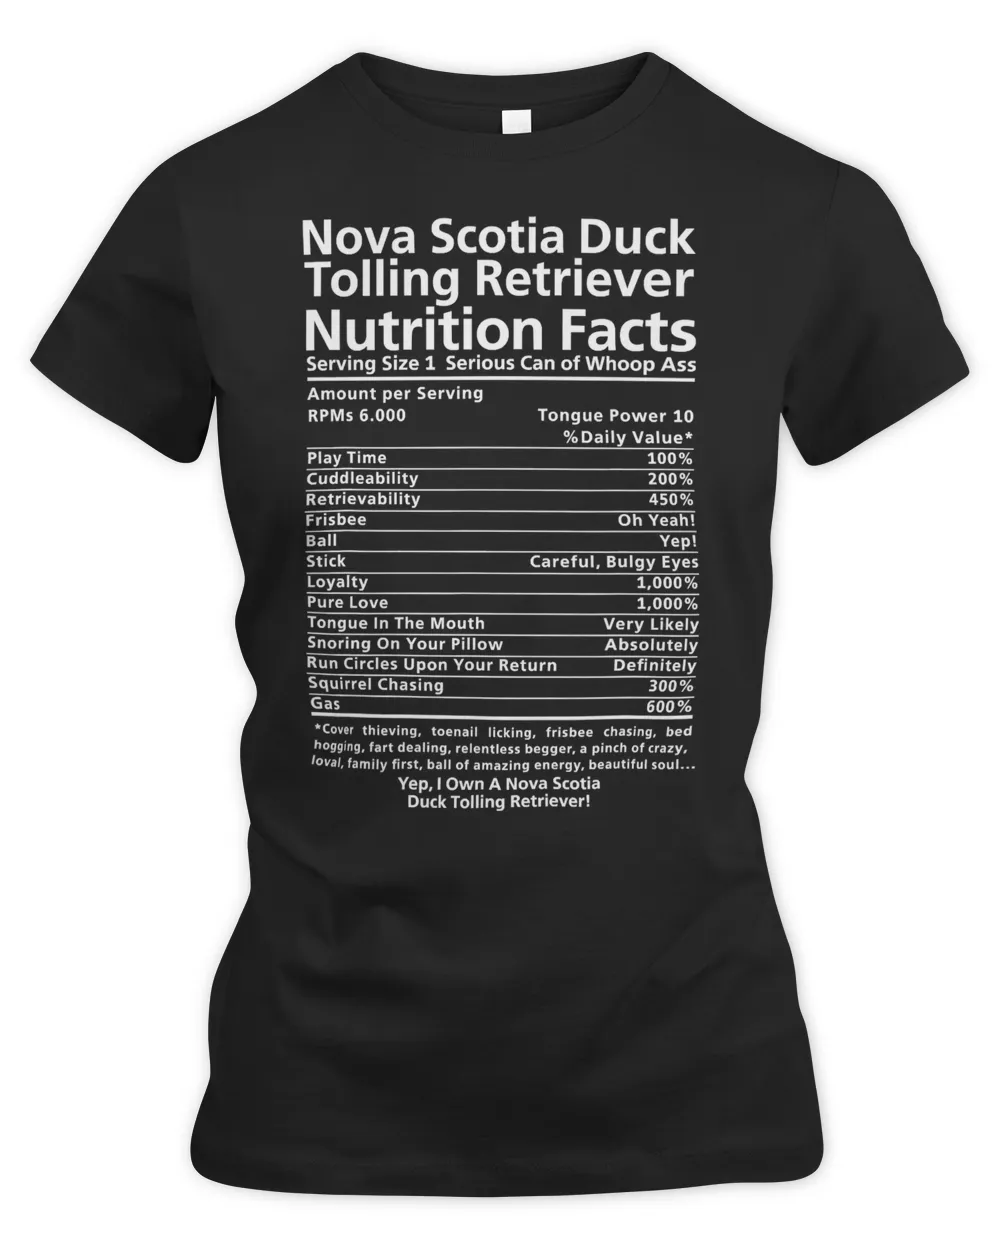 Nova Scotia Duck Tolling Retriever Funny Shirt